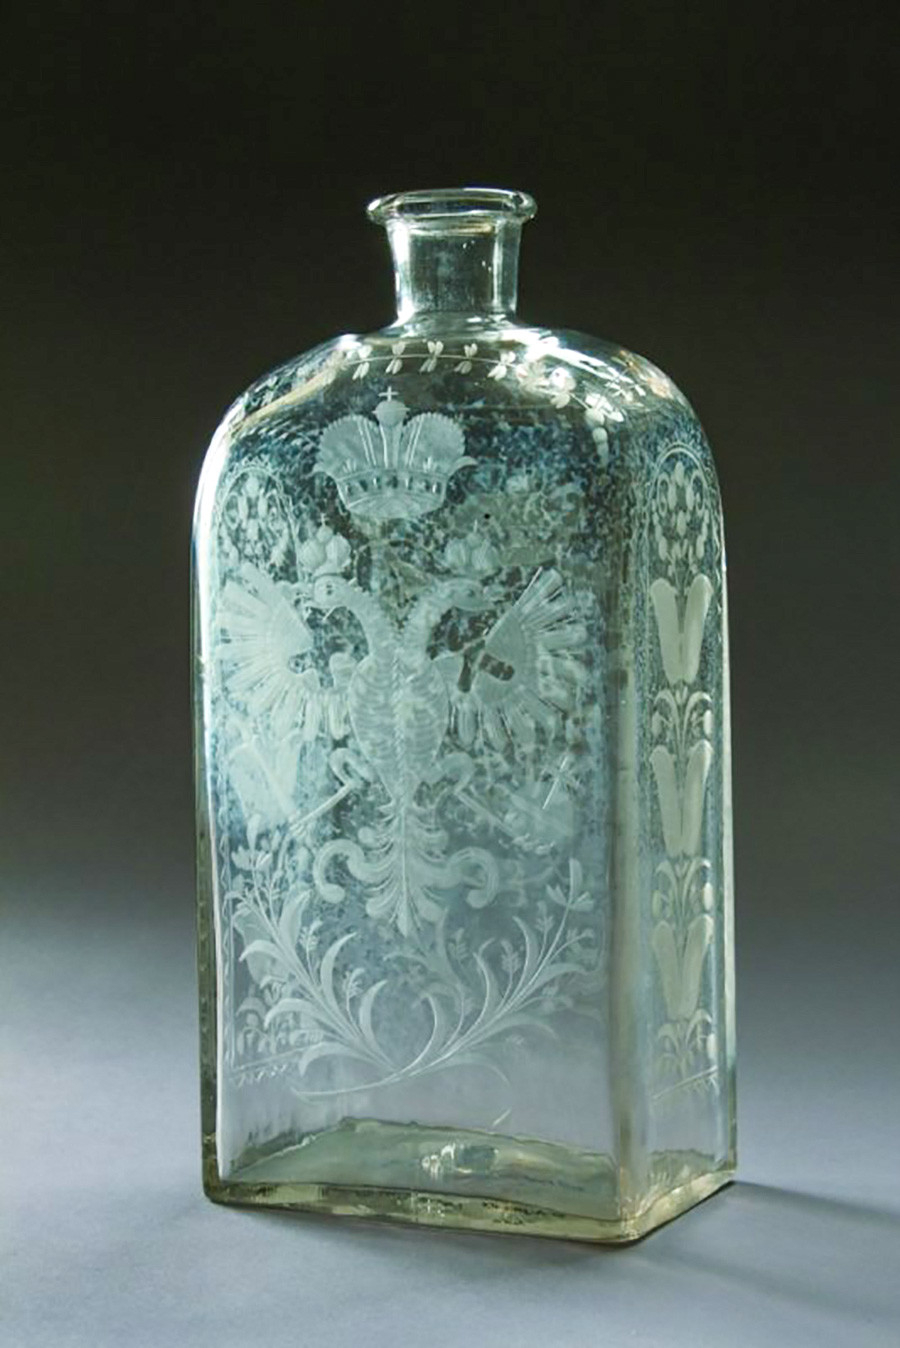 Štof (boca od 1,23 l; stara mjera za zapreminu tekućine i za staklenu bocu koja je služila za alkoholna pića). Sredina 18. stoljeća. Bezbojno matirano staklo. Tvornica u Peterburgu. 